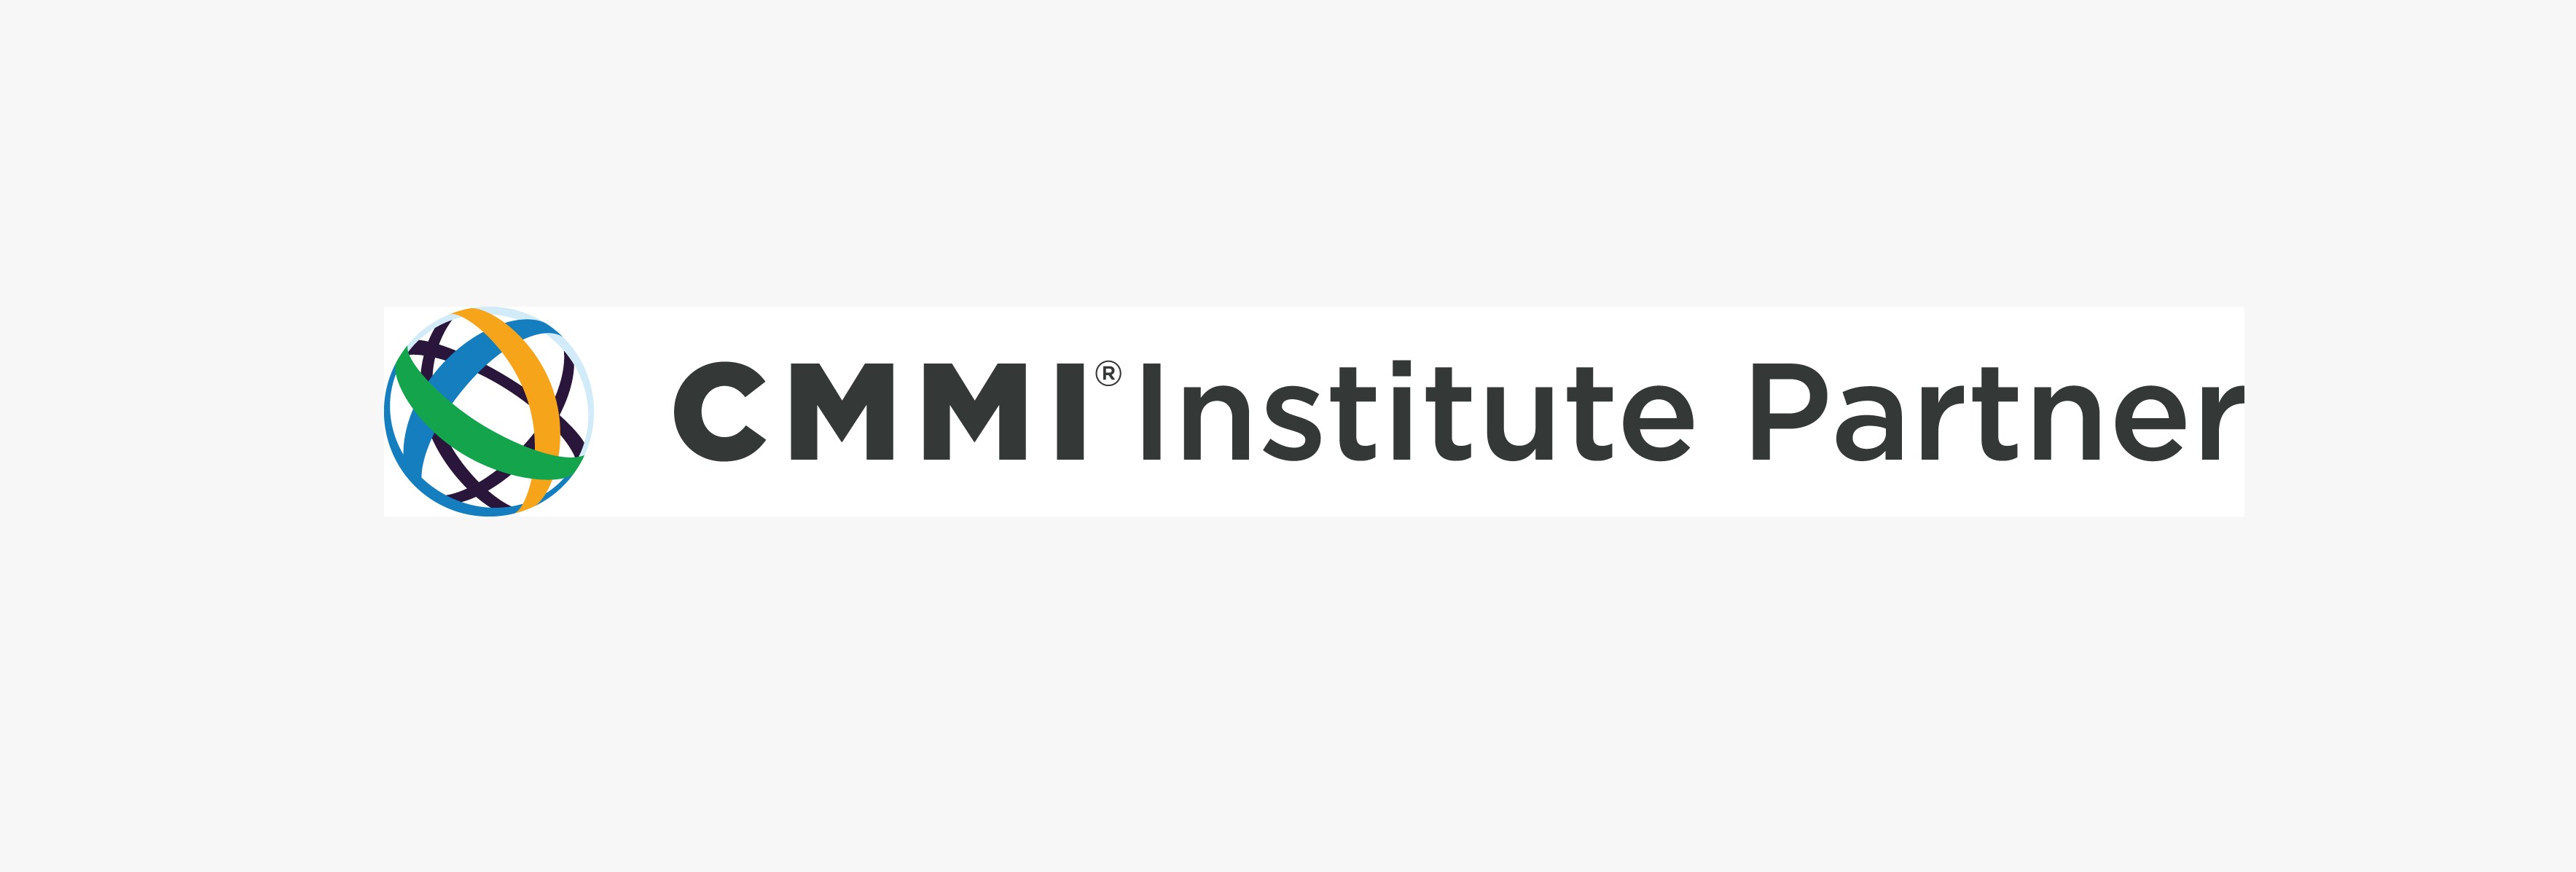 CMMI Institute Partner